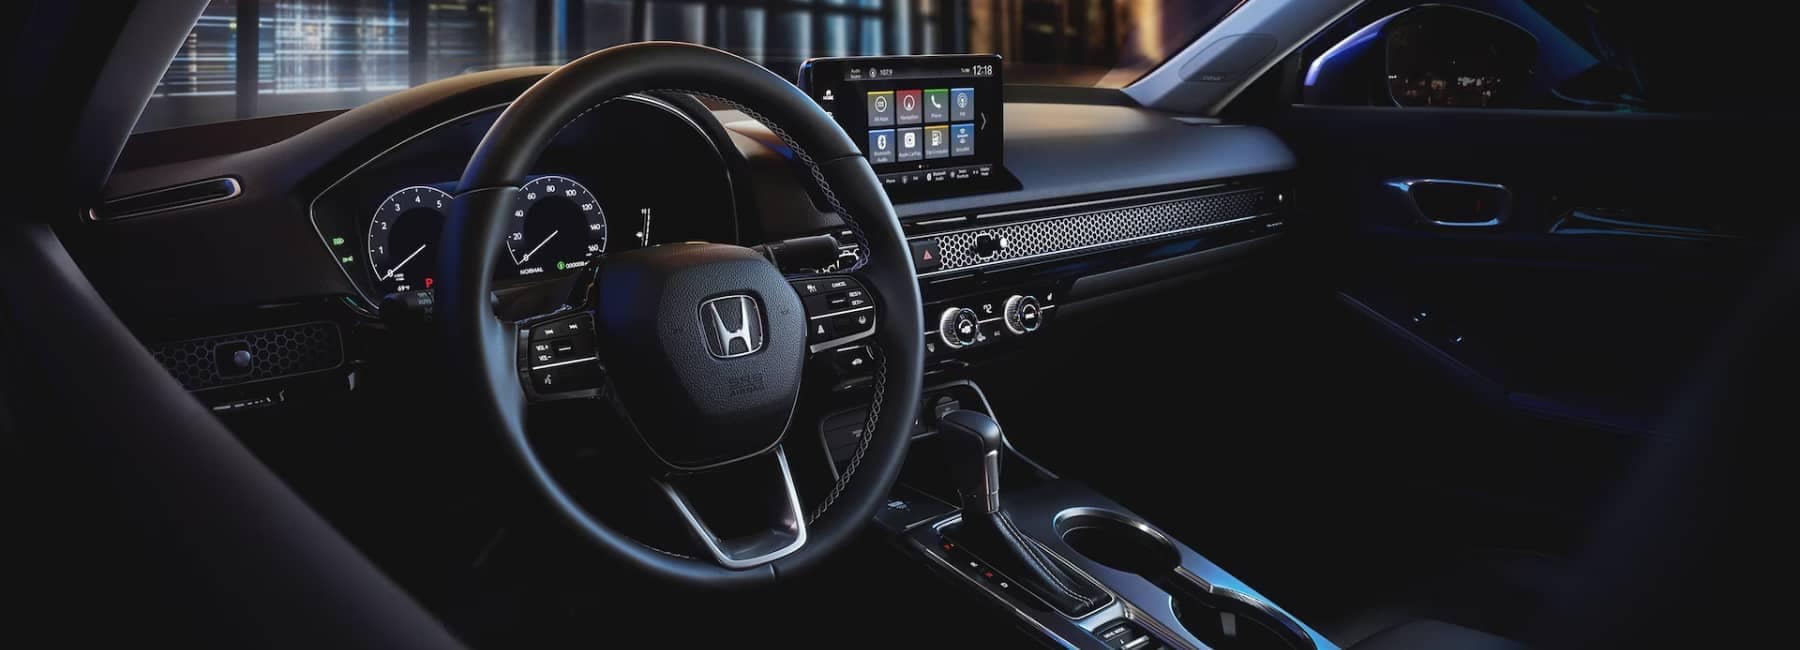 Honda Civic Sedan view of interior features